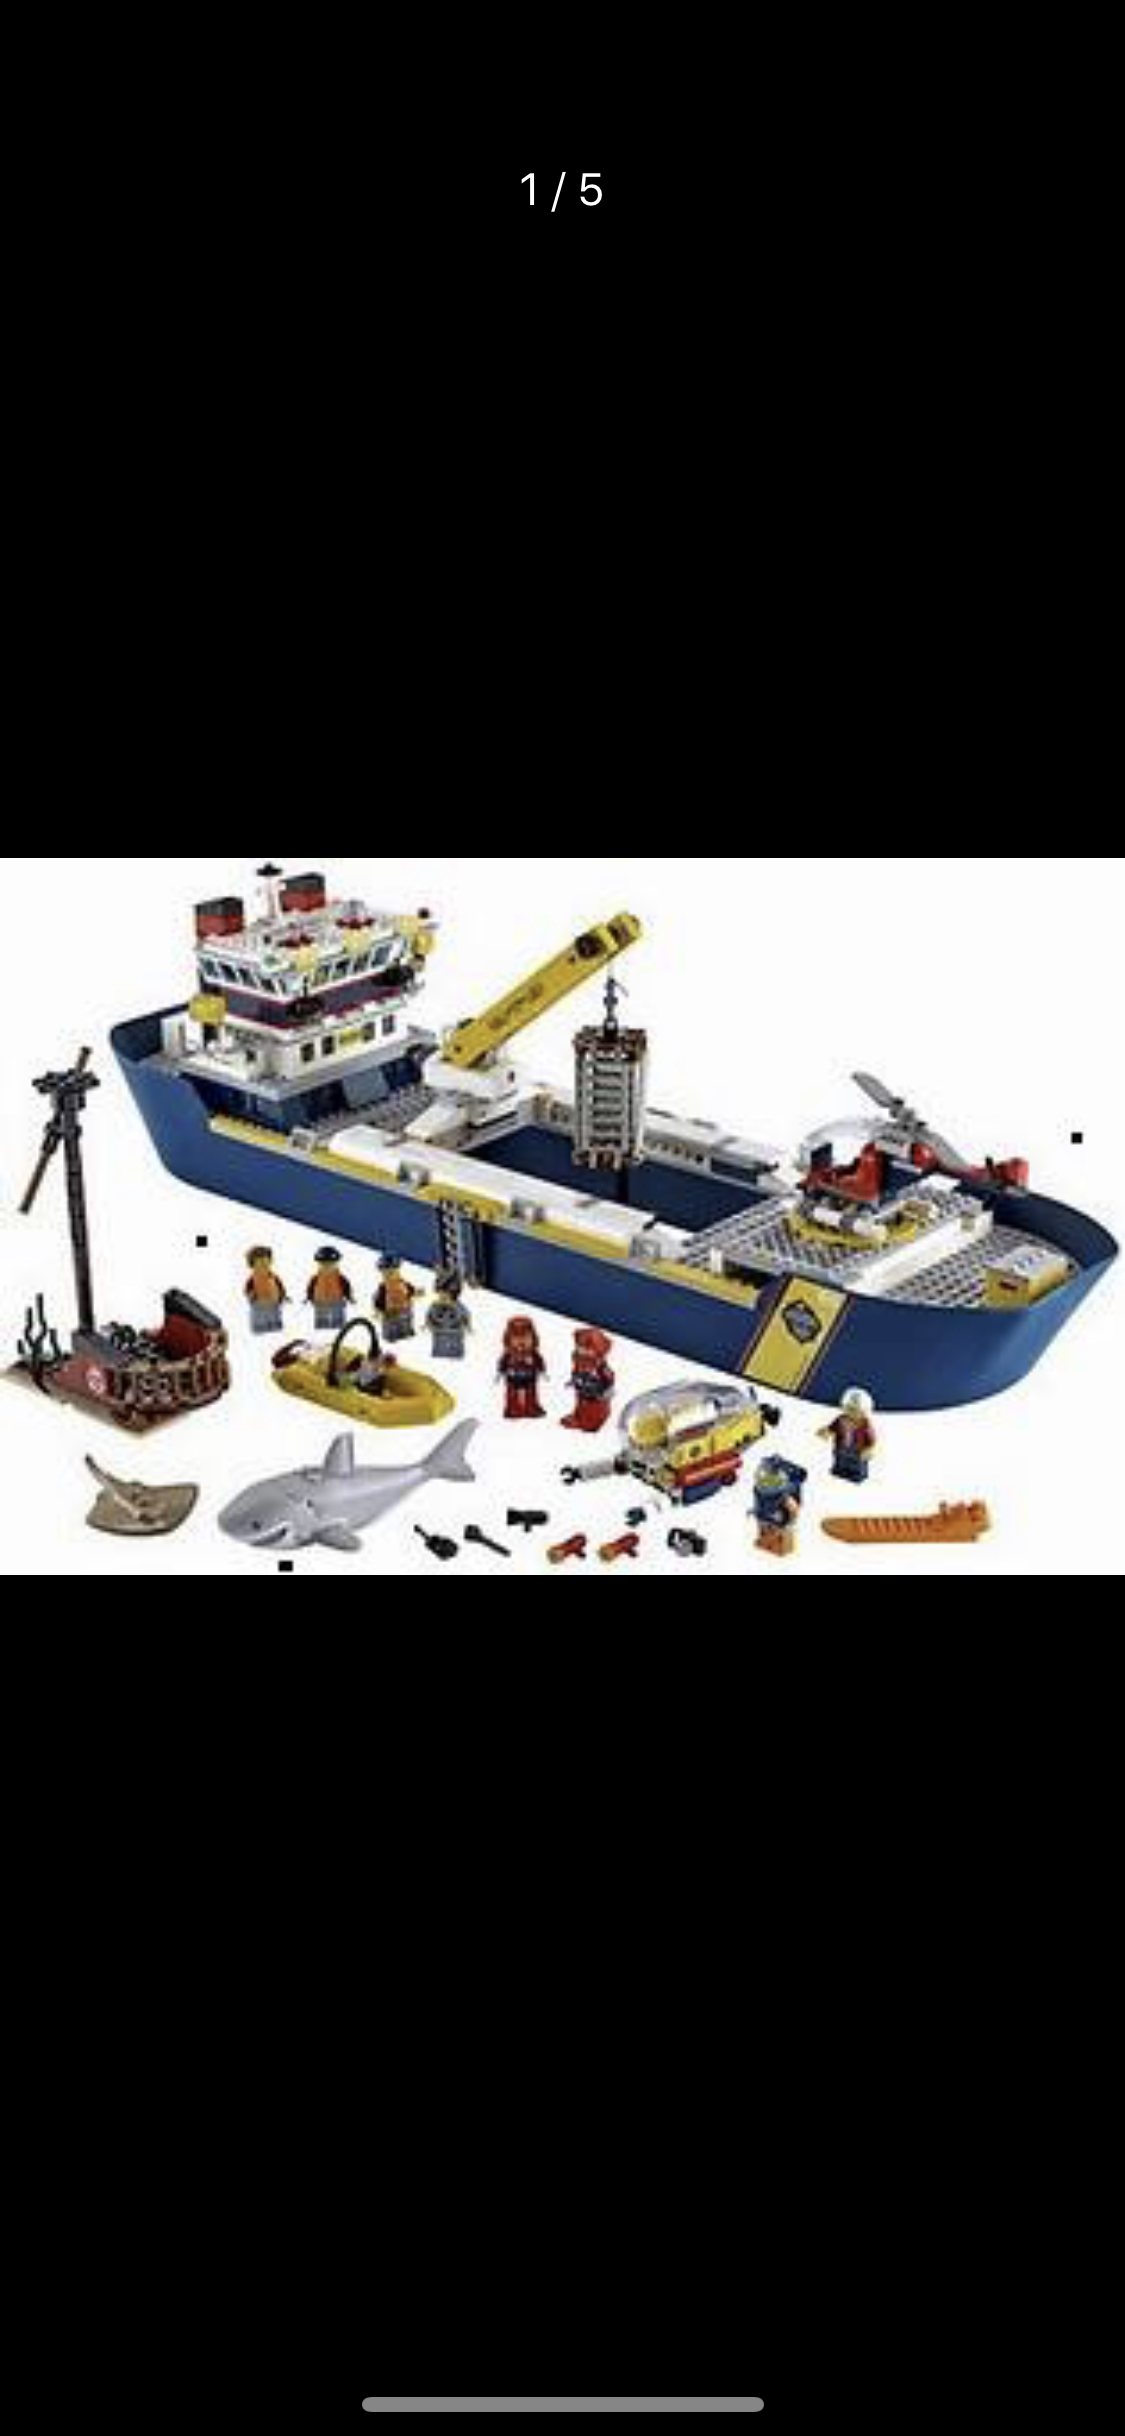 lego乐高城市系列海洋探险巨轮60266 男孩女孩7岁 生日礼物 玩具积木